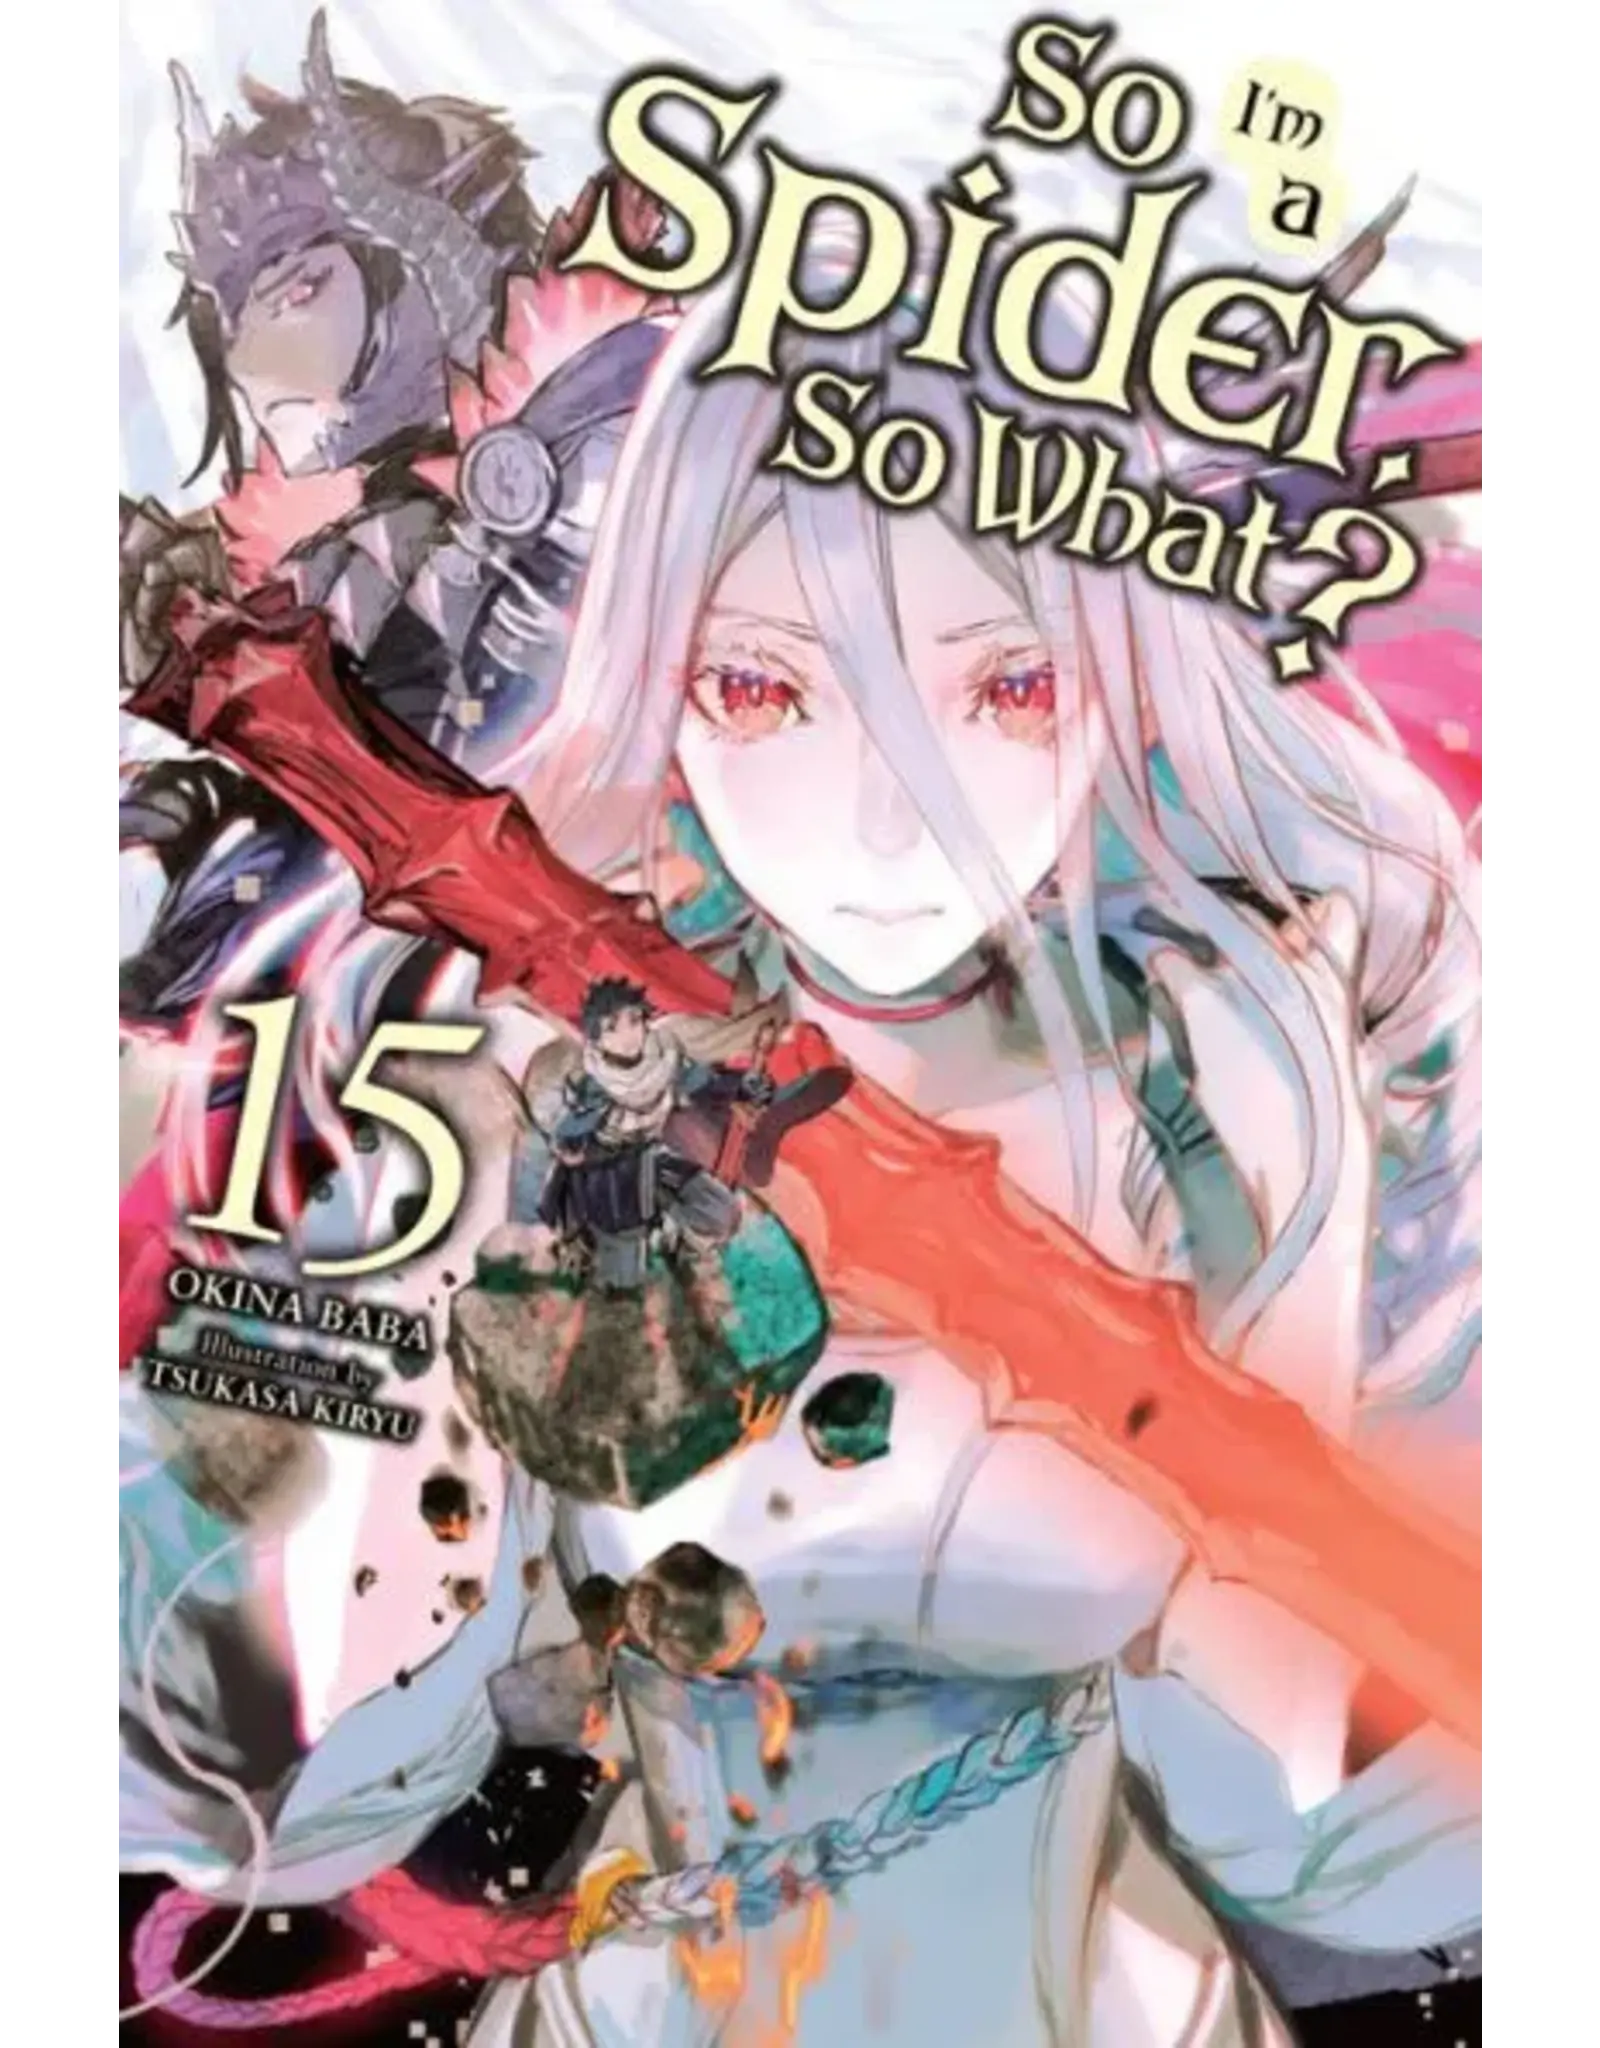 So I'm a Spider, So What? Vol 15 Light Novel